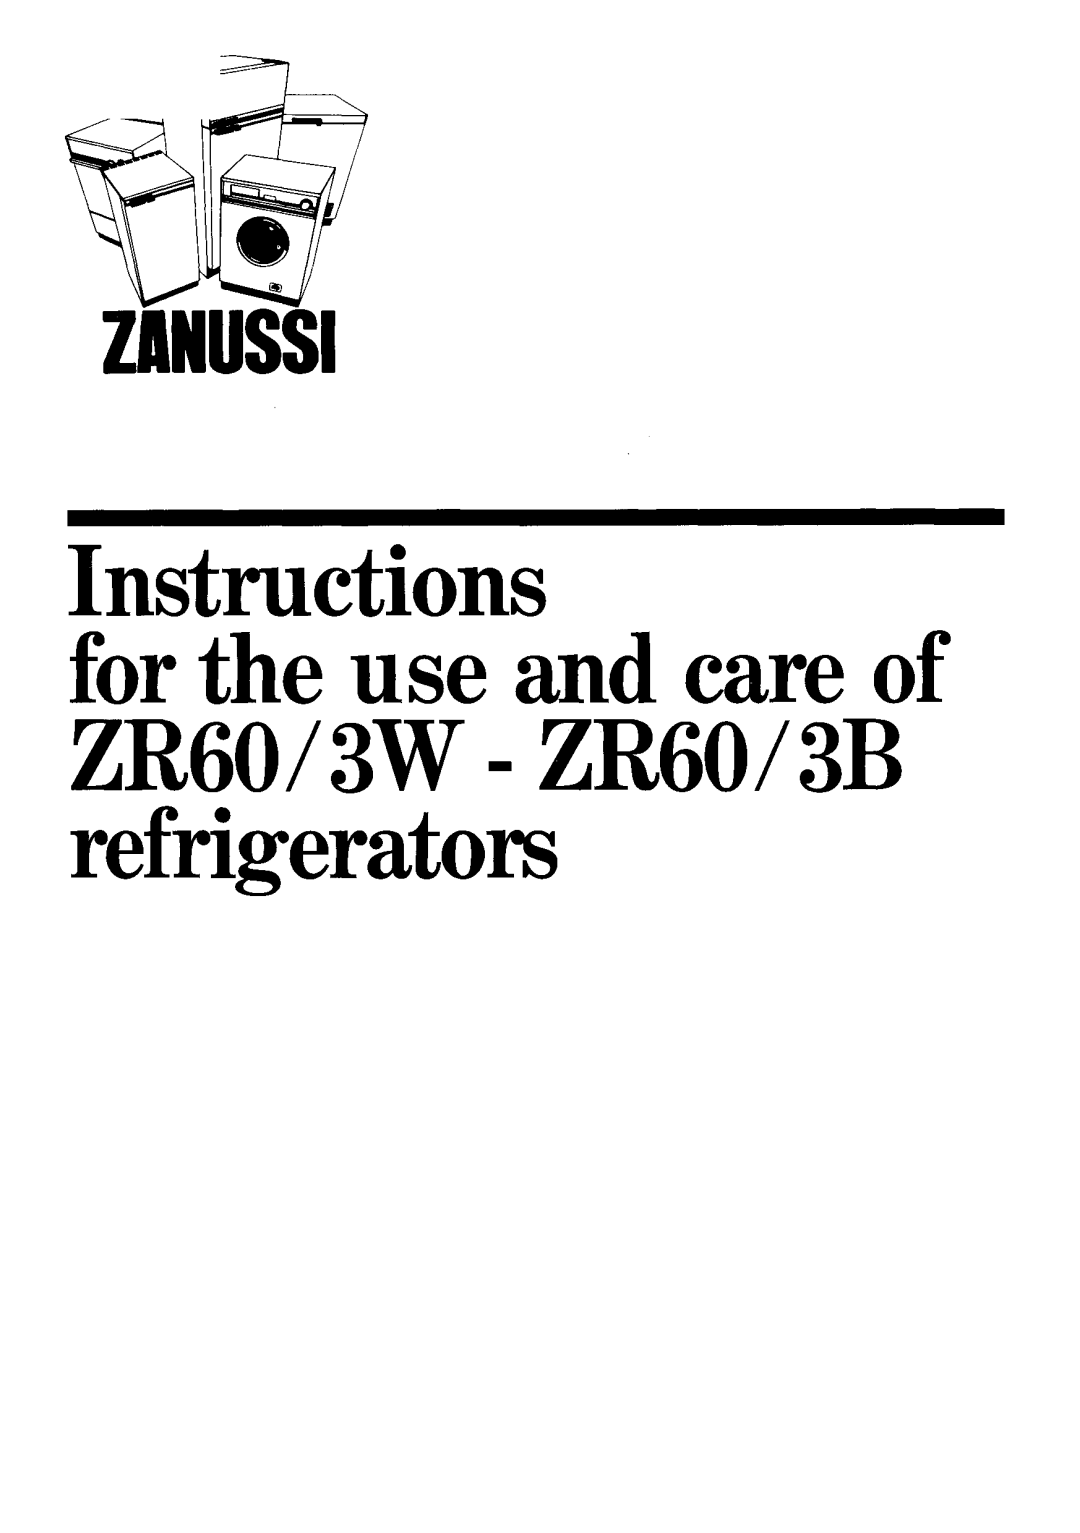 Zanussi 3W - ZR60/3B manual 